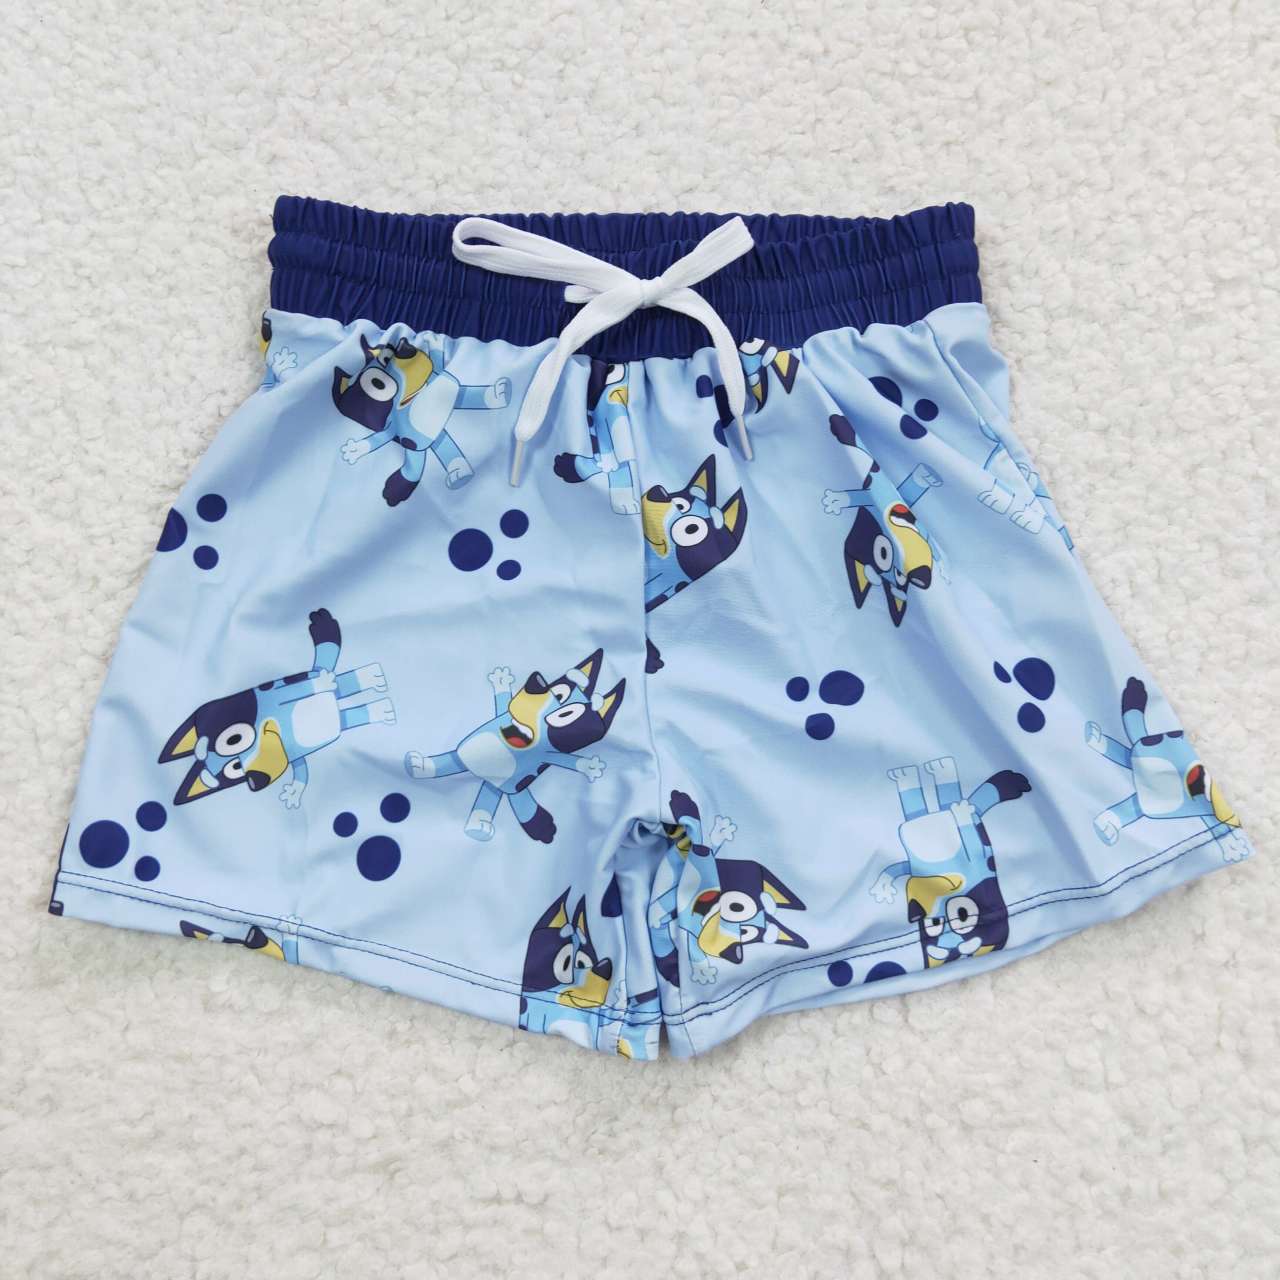 bluey boy swim trunk shorts – Mu Mory Clothing